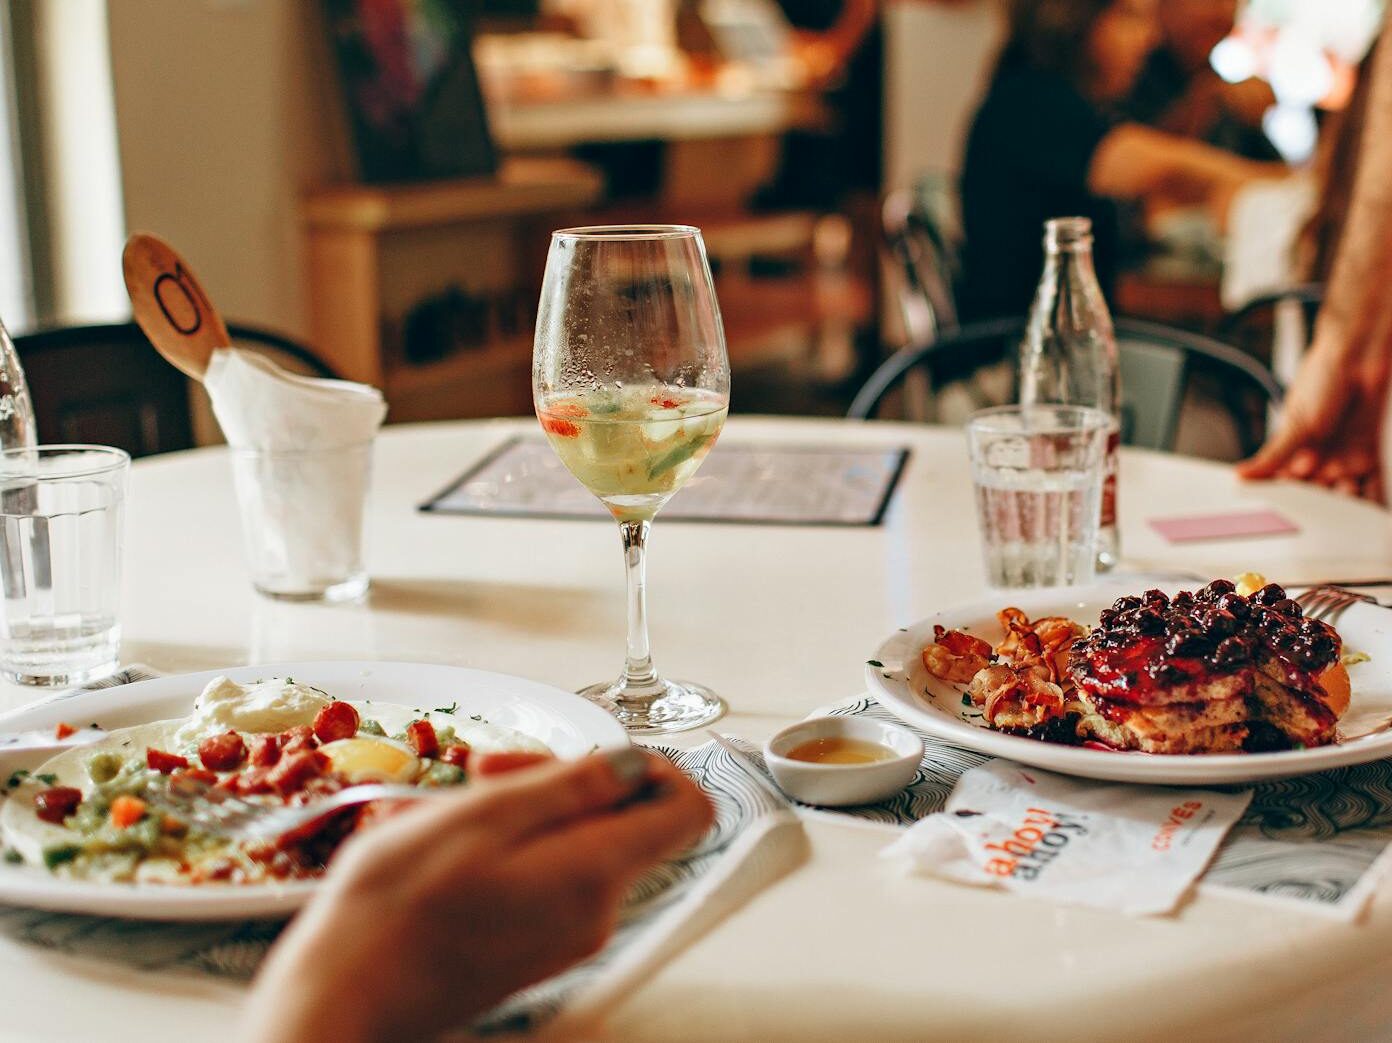 Nejlepší restaurace Milovice: 6 tipů na nejoblíbenější podniky